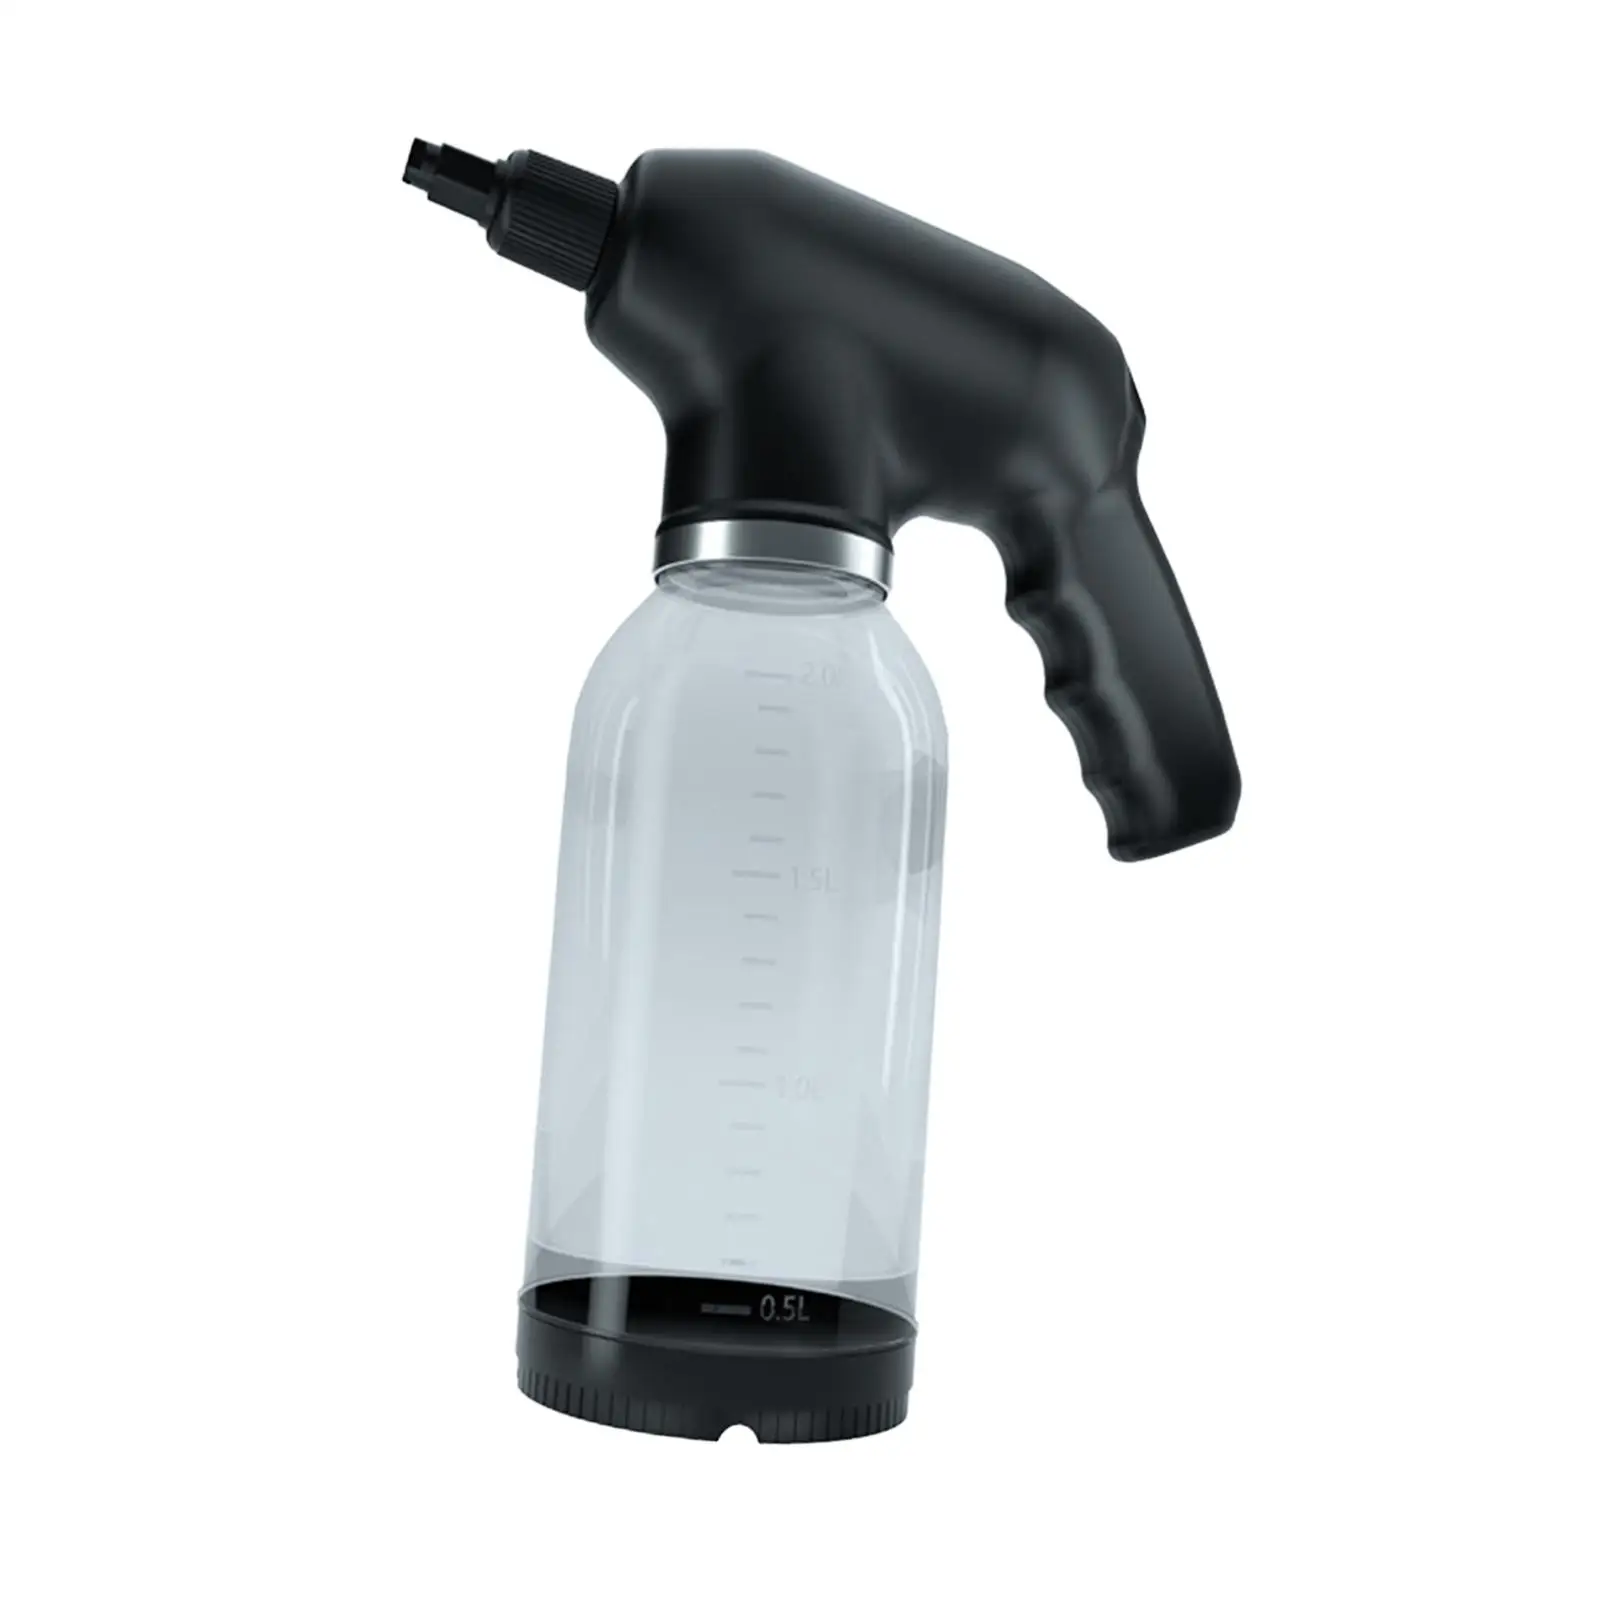 2.0L Car Electric Automatic Foam Sprayer 5x13inch Handheld for Car Washing